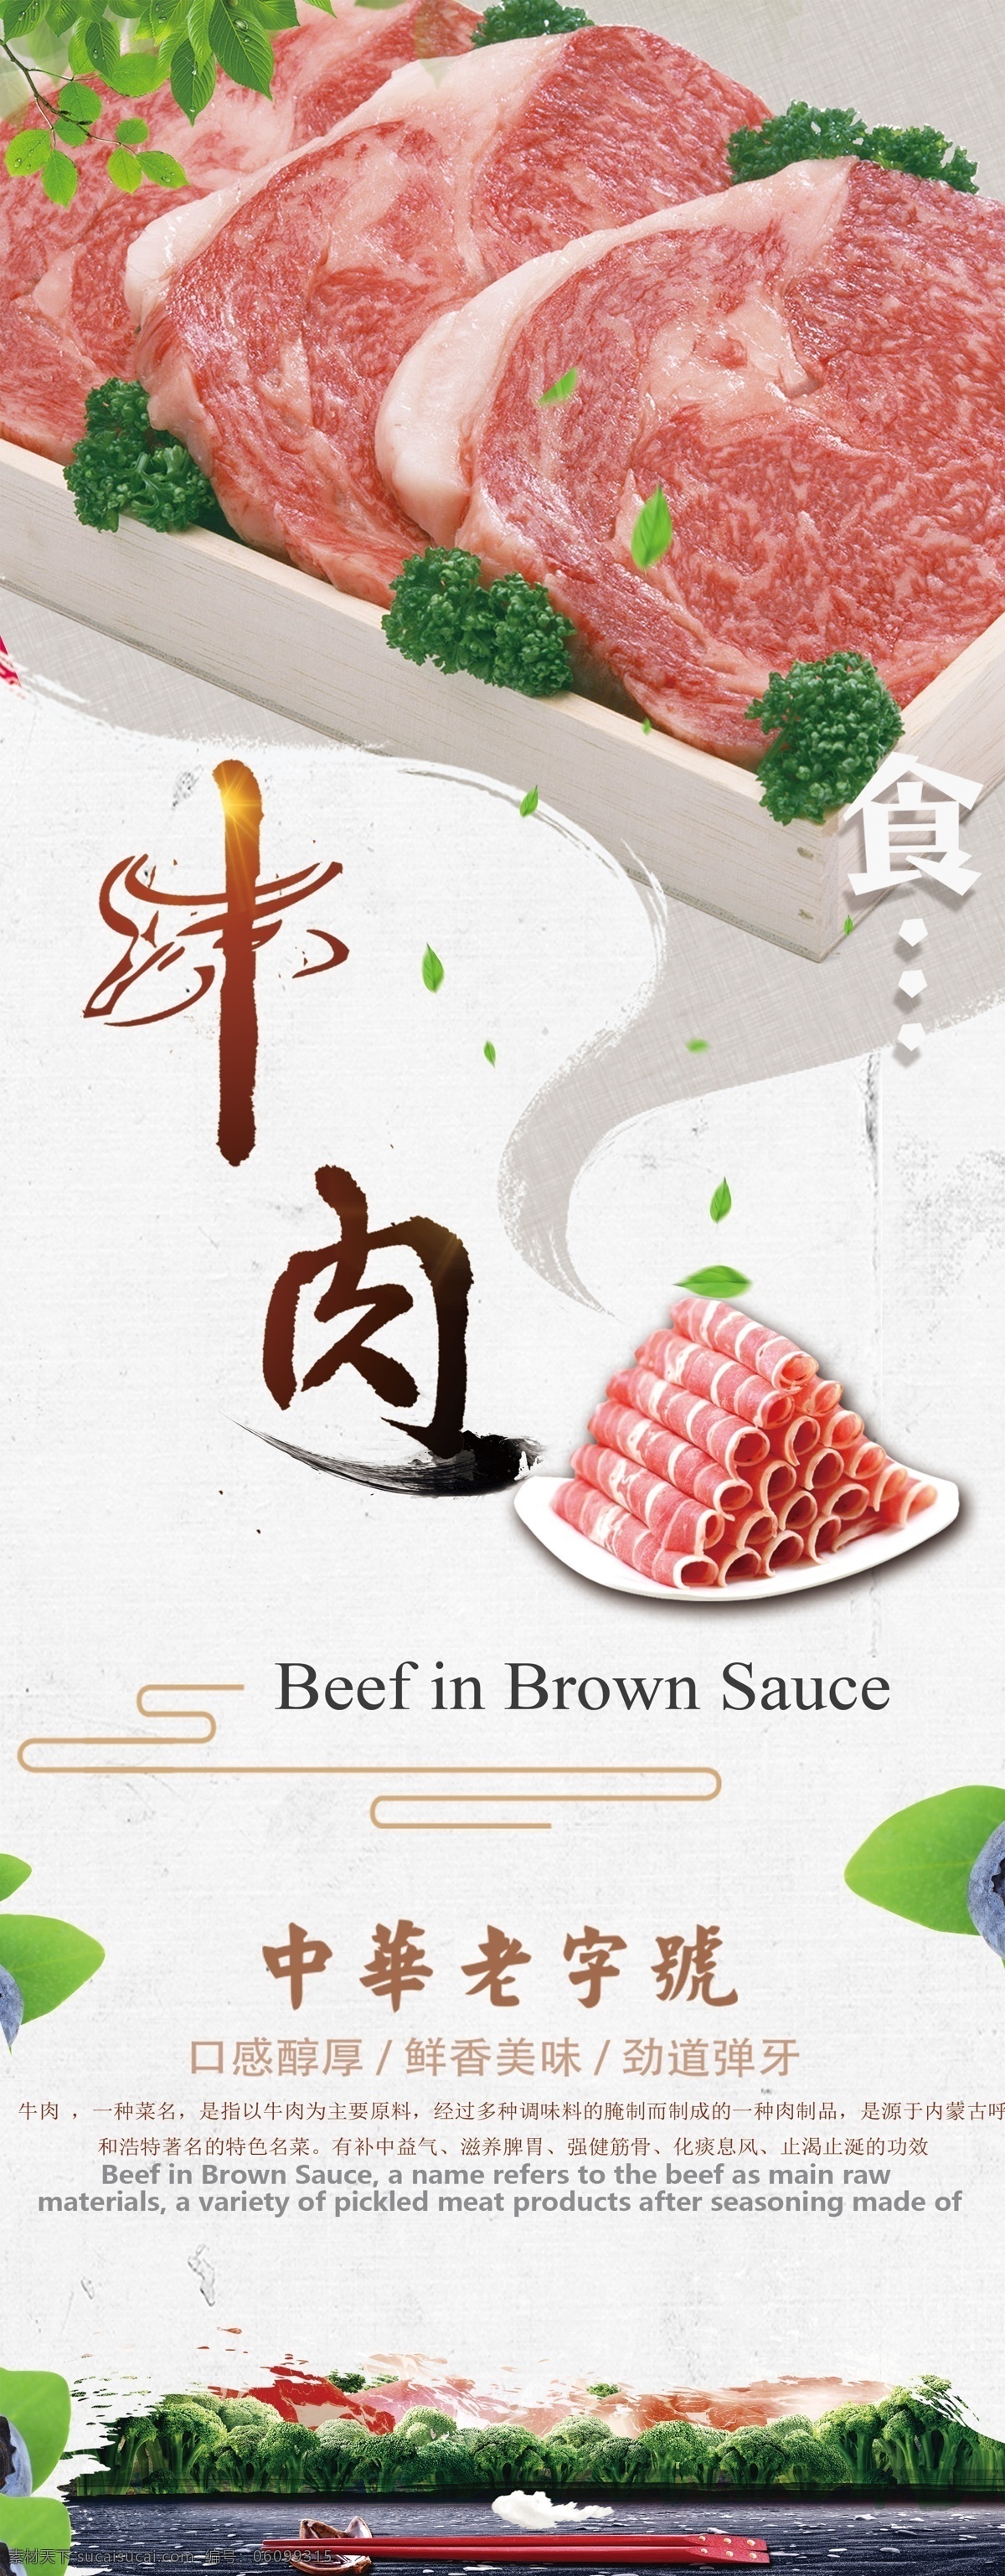 新鲜 内蒙古 牛肉 促销 展架 易拉宝 特色美食 旅游 创意 美食 肉类